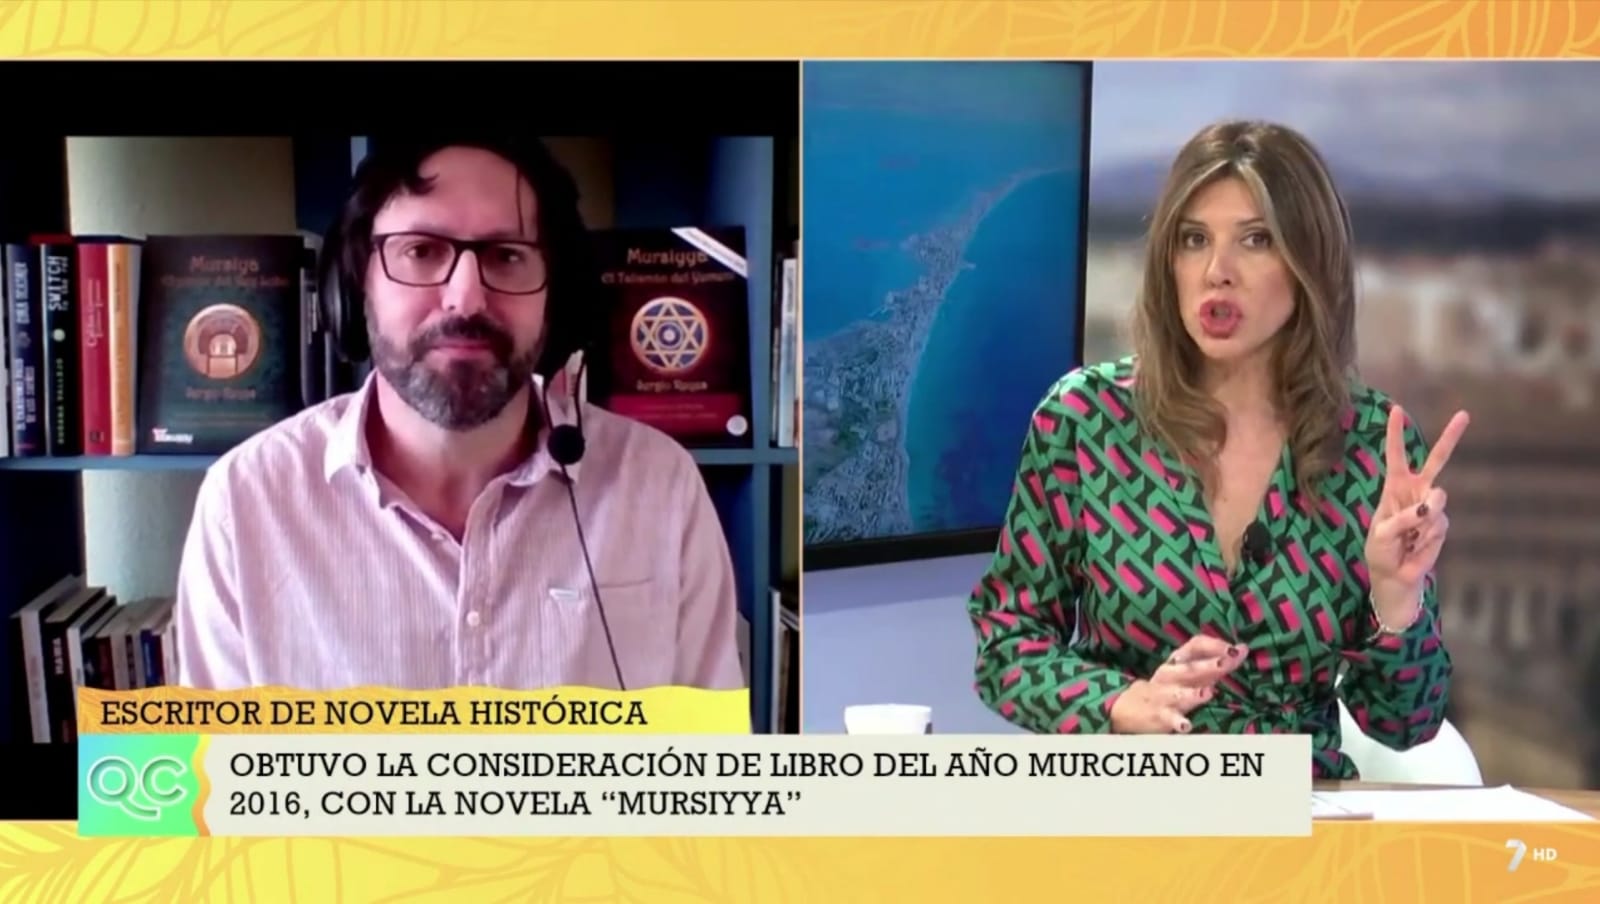 Sergio Reyes en TV 7RM hablando de la serie Mursiya / Mursiyya en el programa Quédate conmigo, dirigido por Encarna Talavera (victoriosa en esta imagen) y con Mariángeles Ibernón llevando la sección literaria